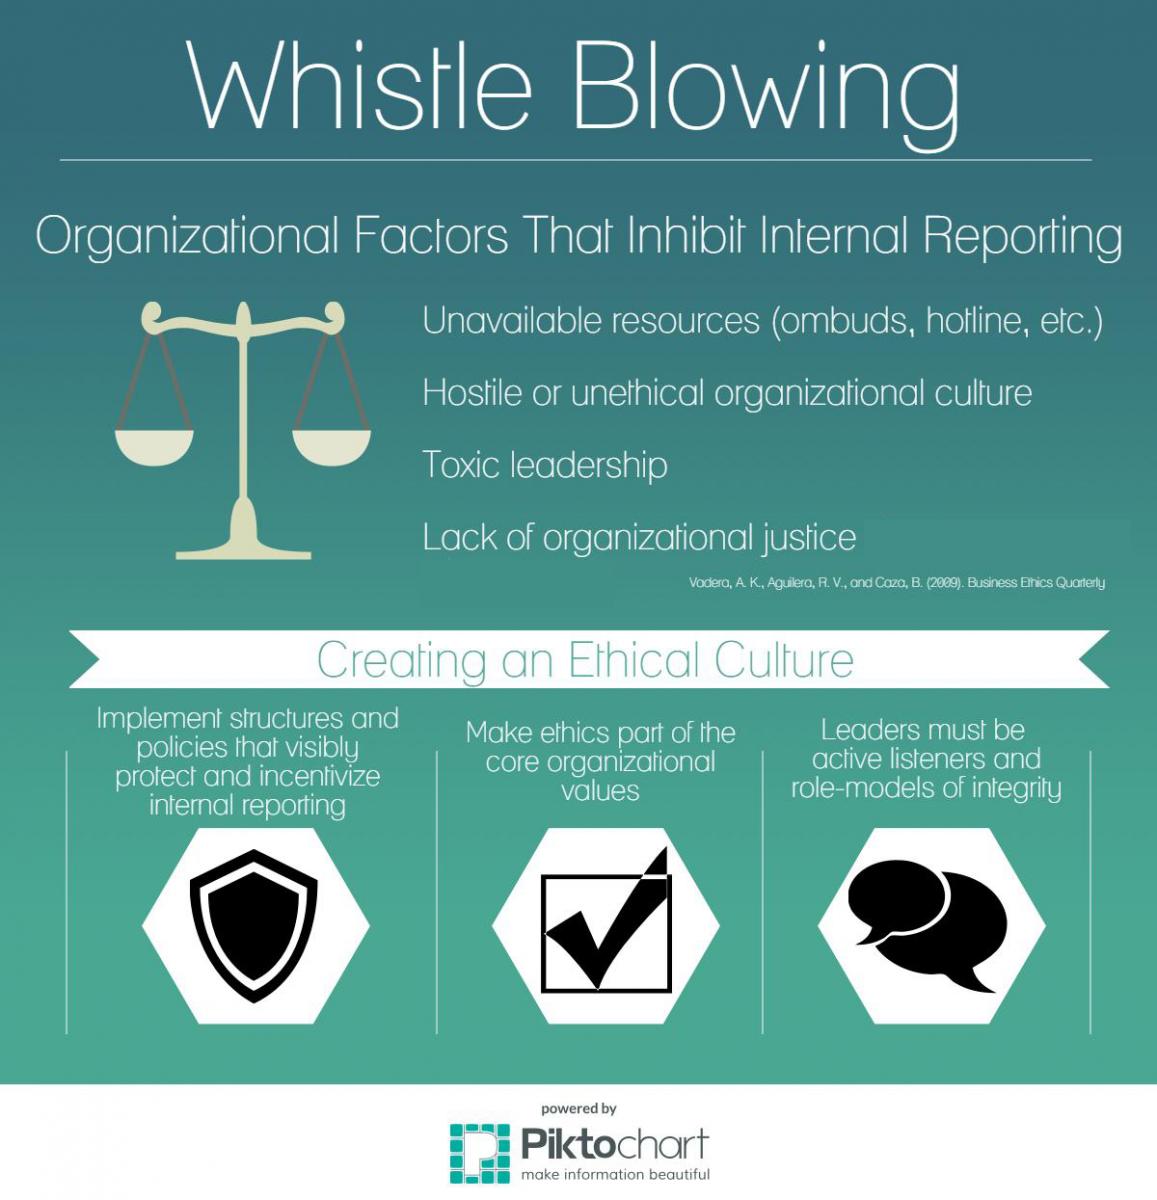 È etico whistleblowing?